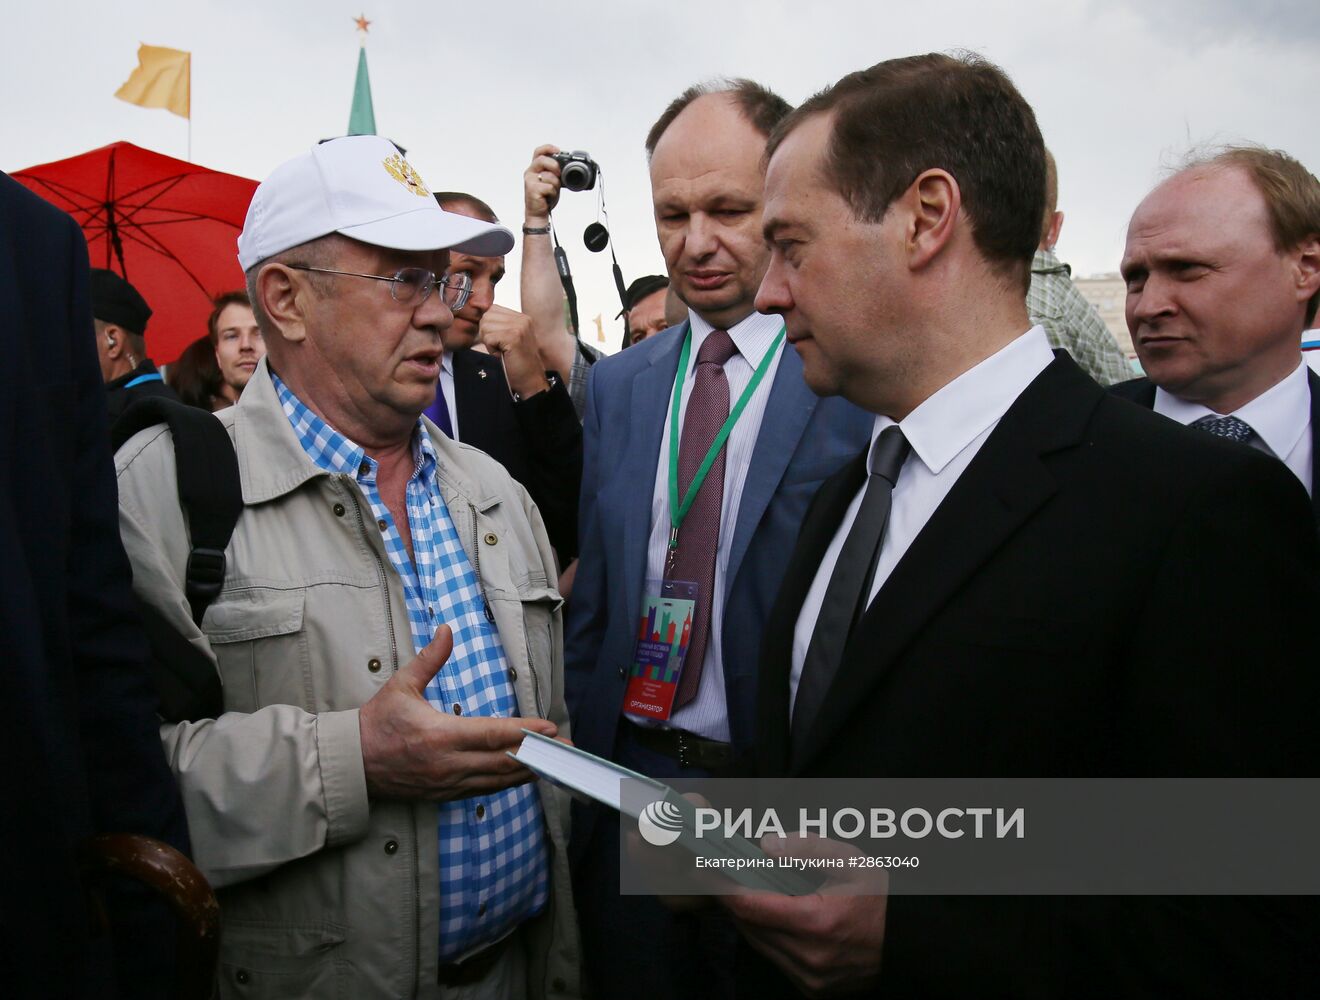 Премьер-министр РФ Д. Медведев открыл книжный фестиваль "Красная площадь"